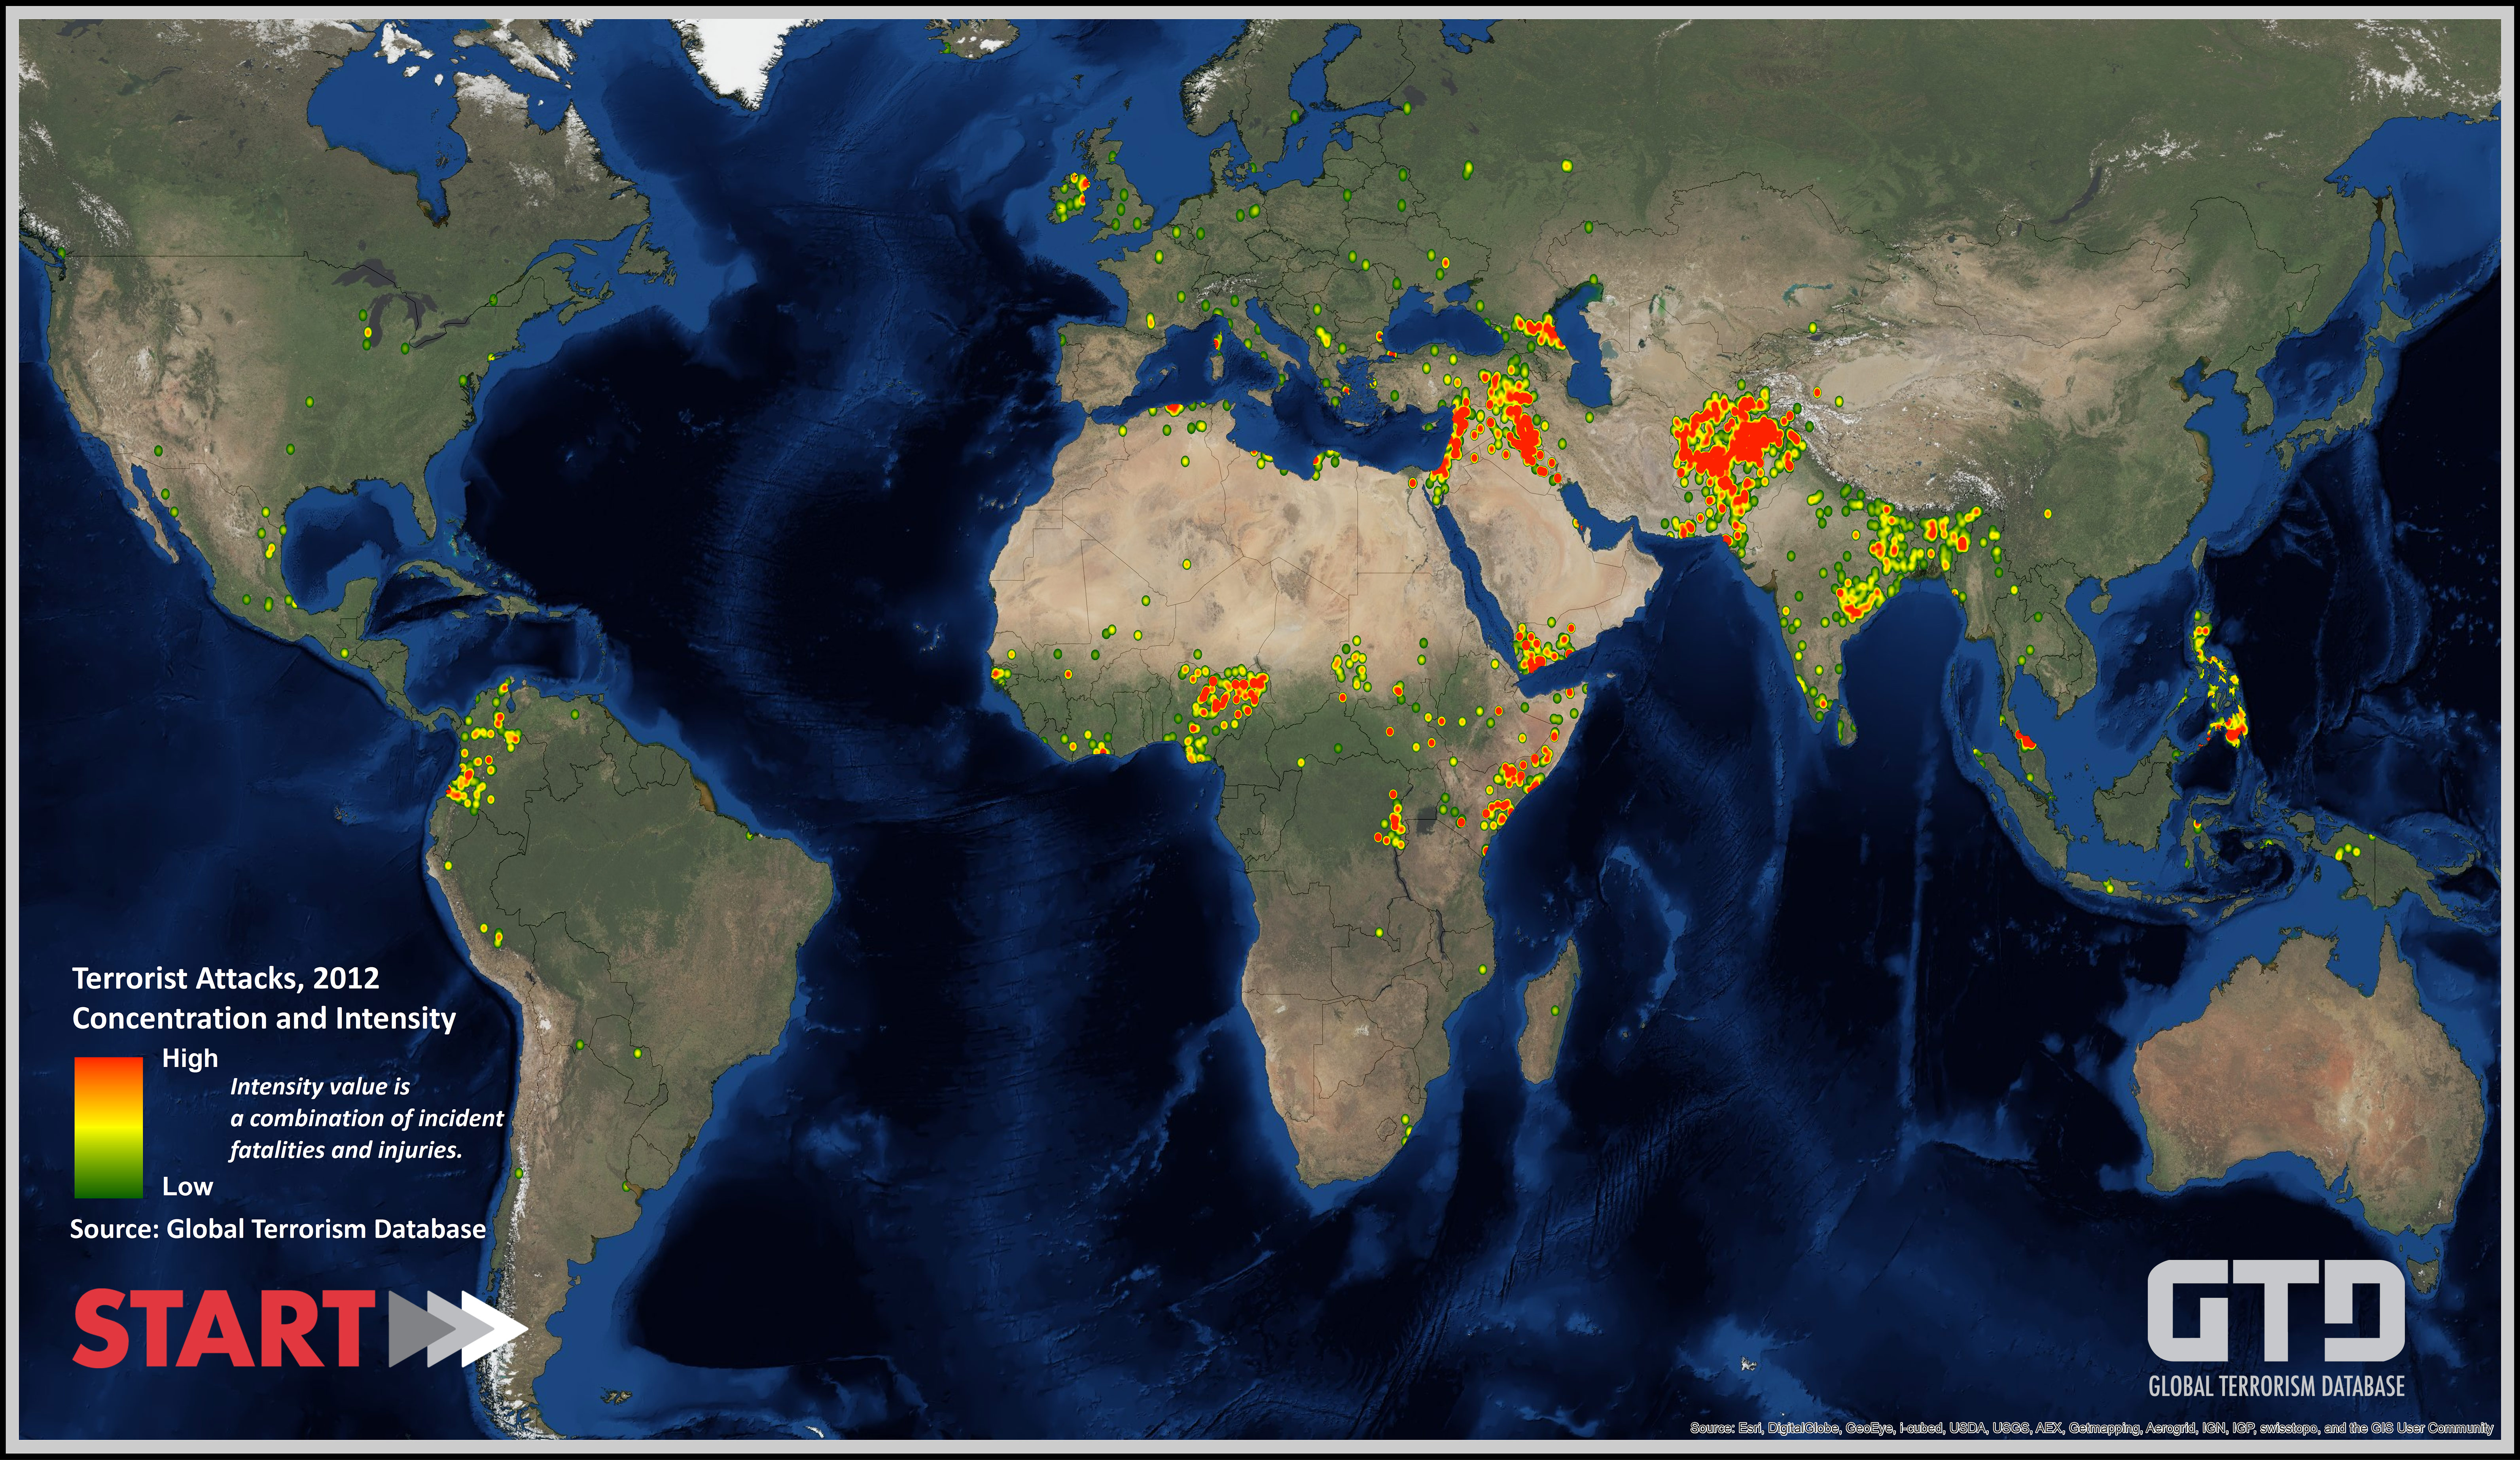 http://www.start.umd.edu/gtd/images/START_GlobalTerrorismDatabase2012dataset_Map.jpg